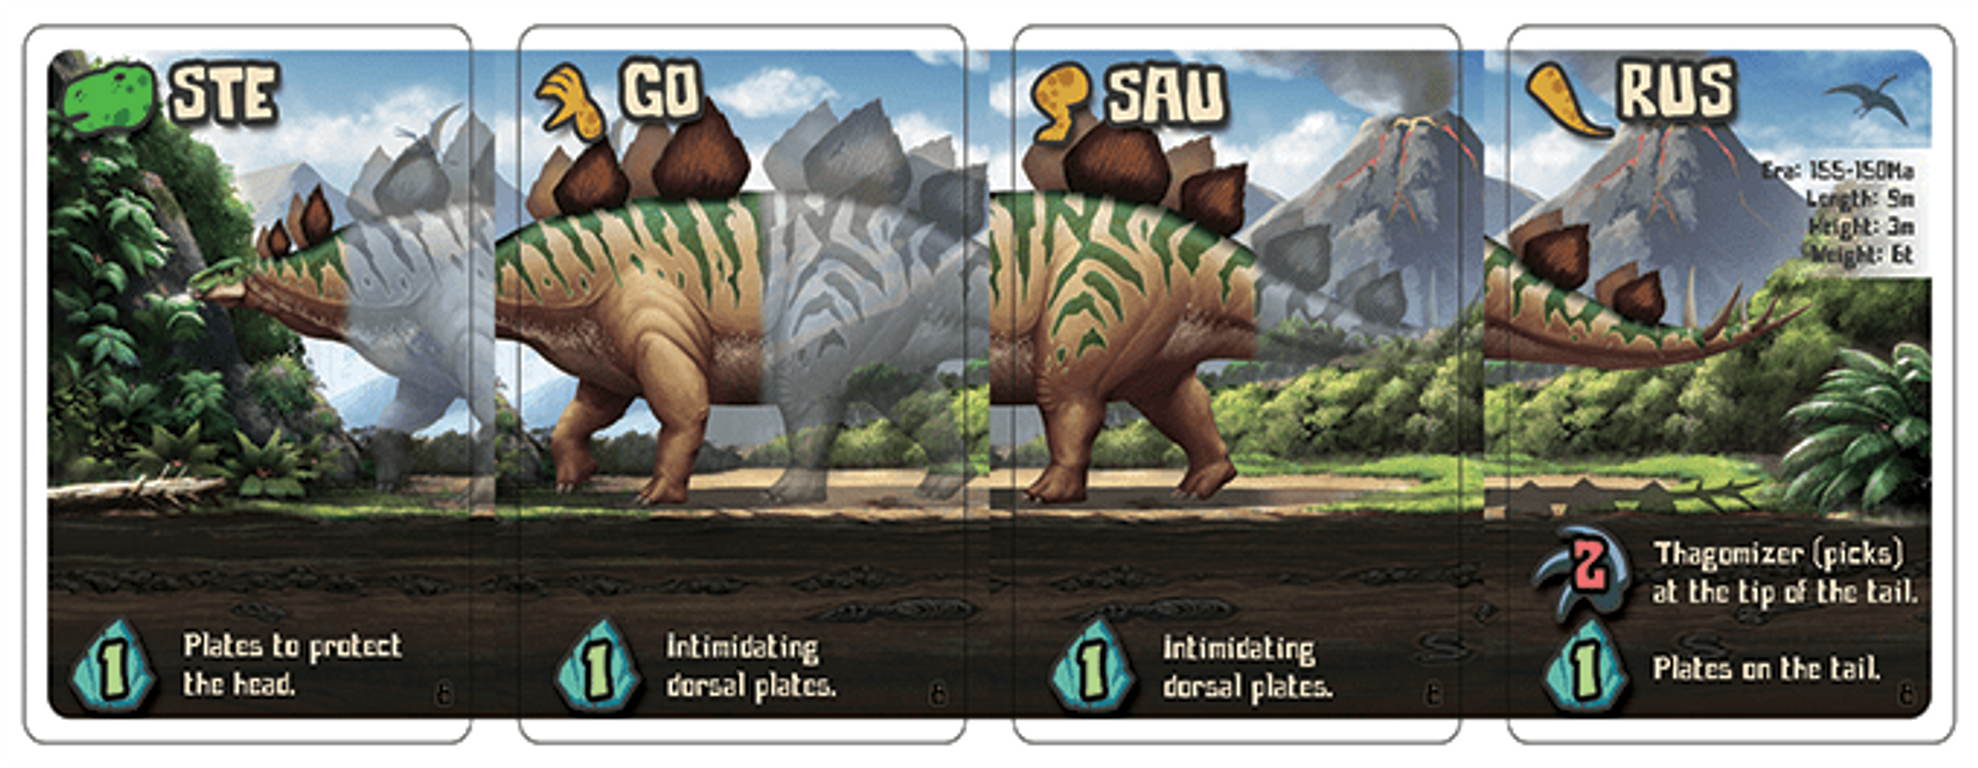 Dinodocus cartes